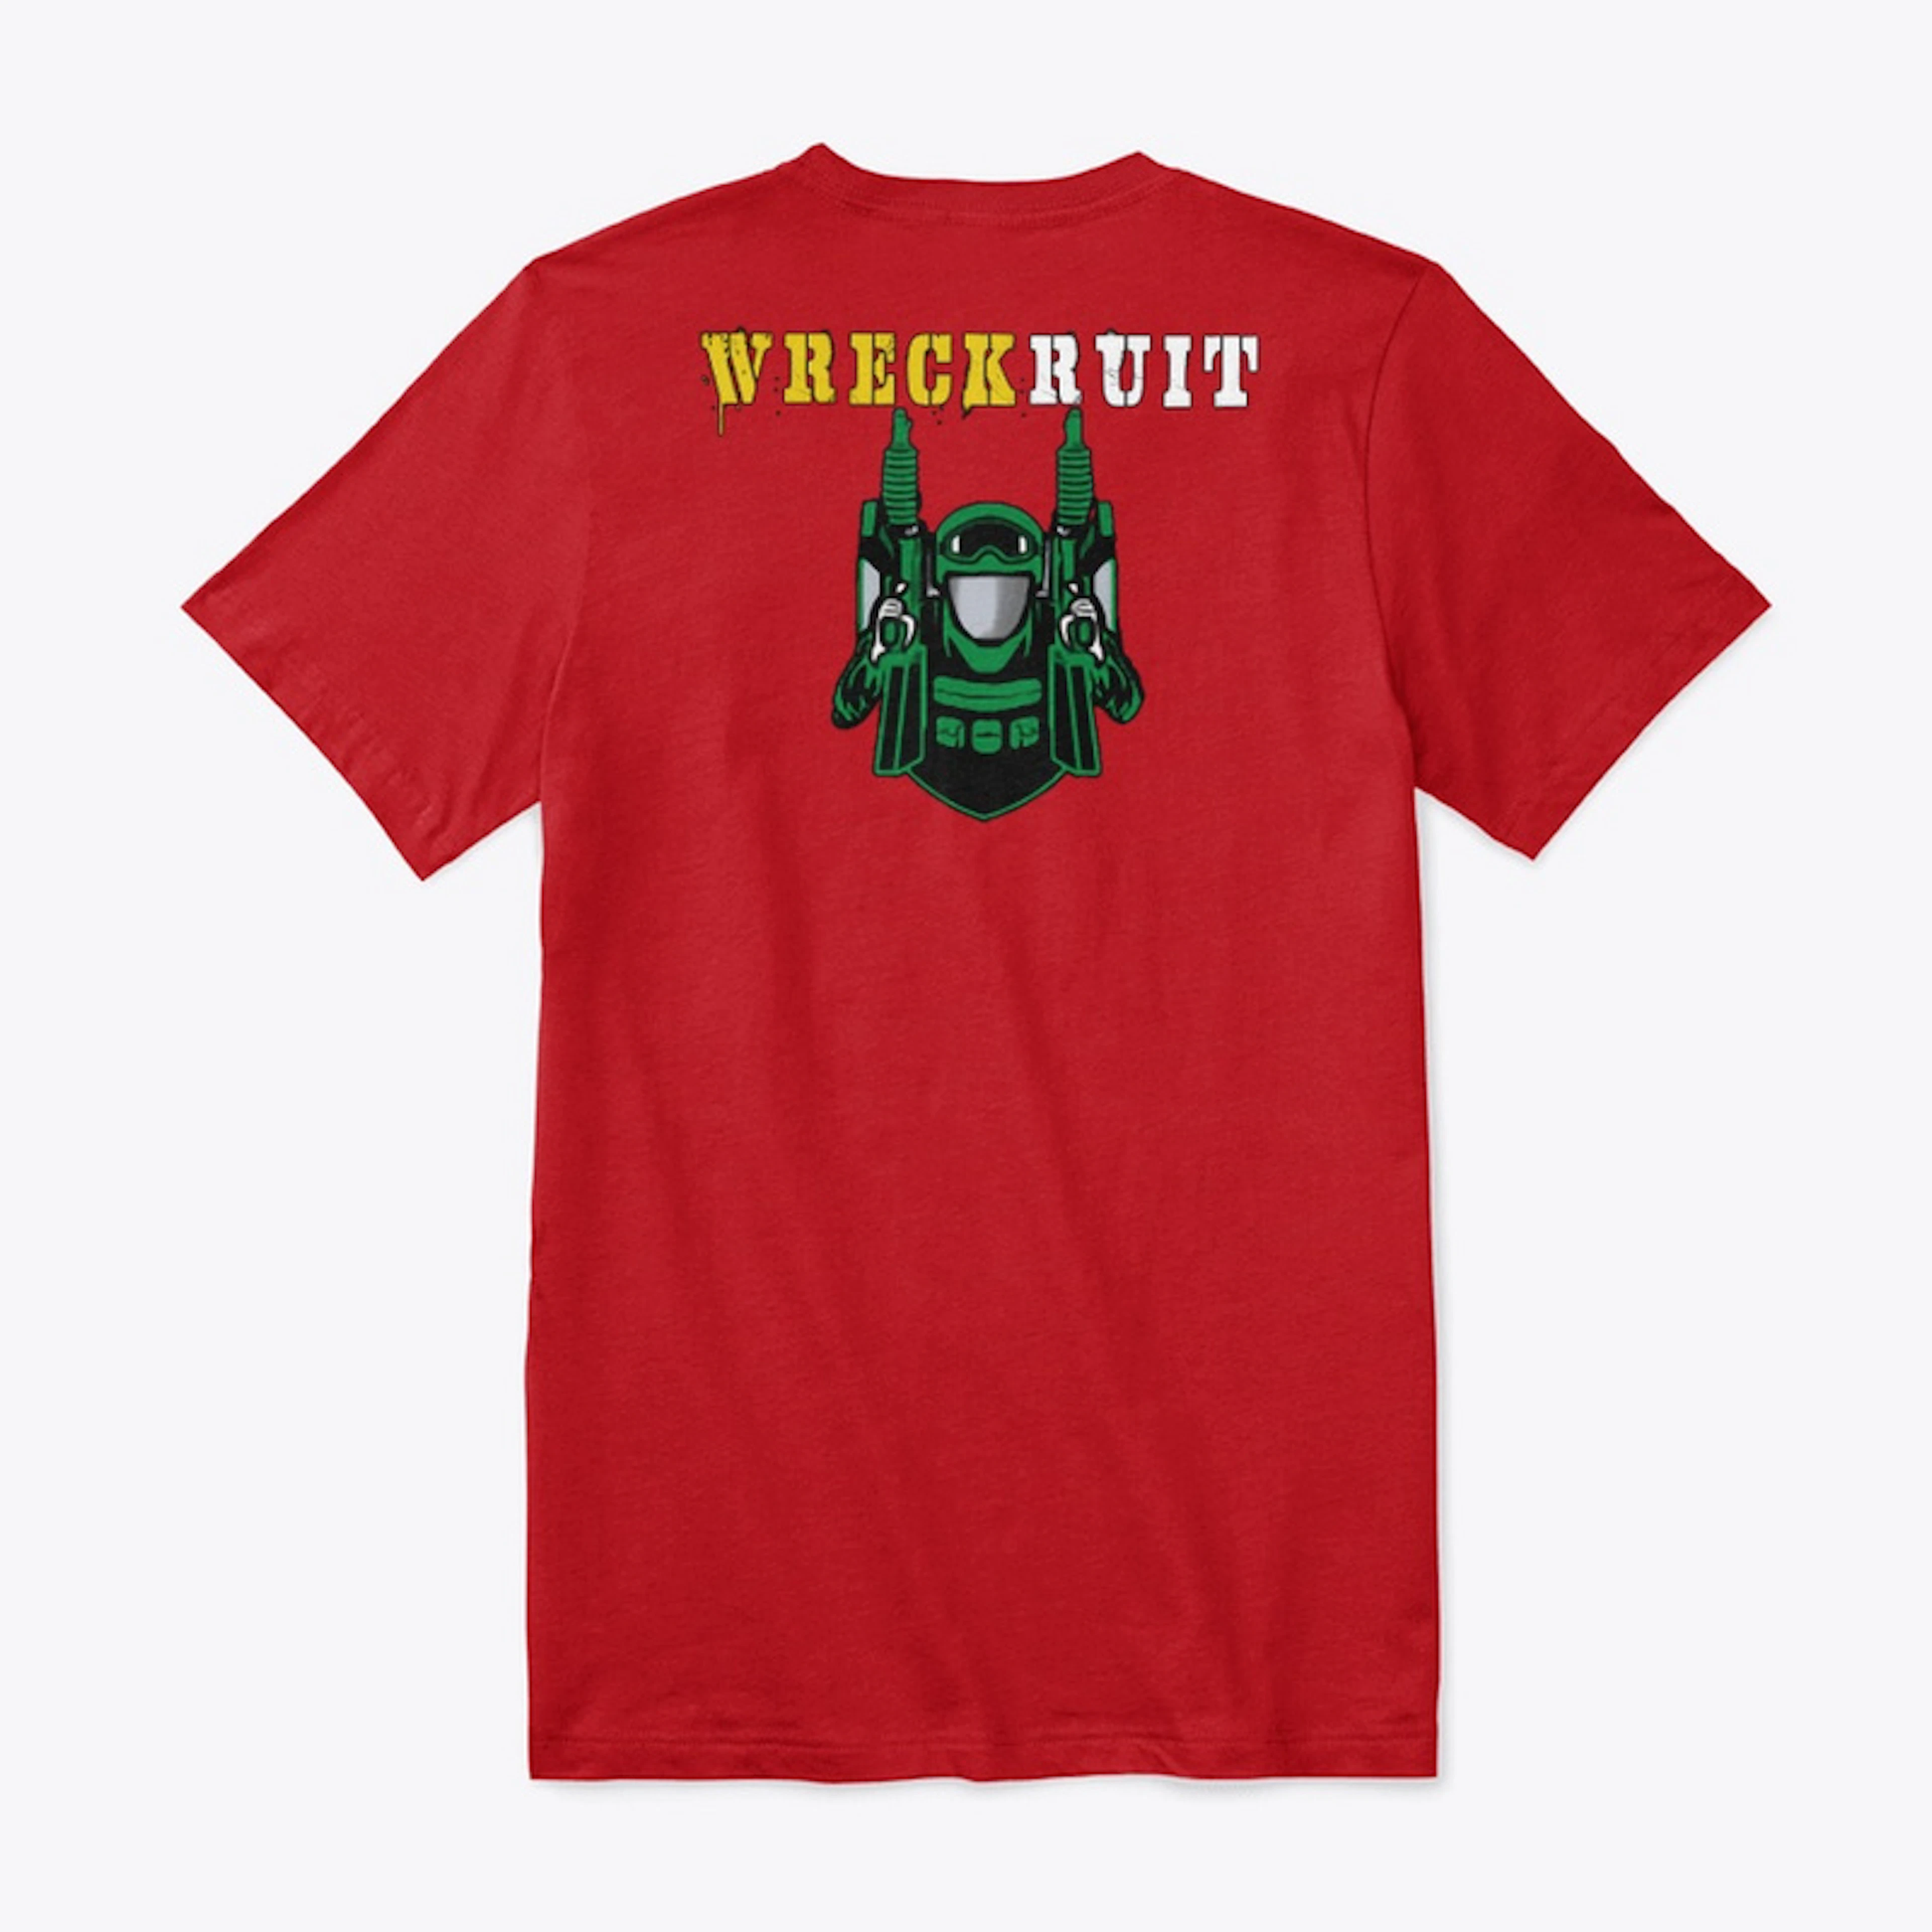 Wreckruit